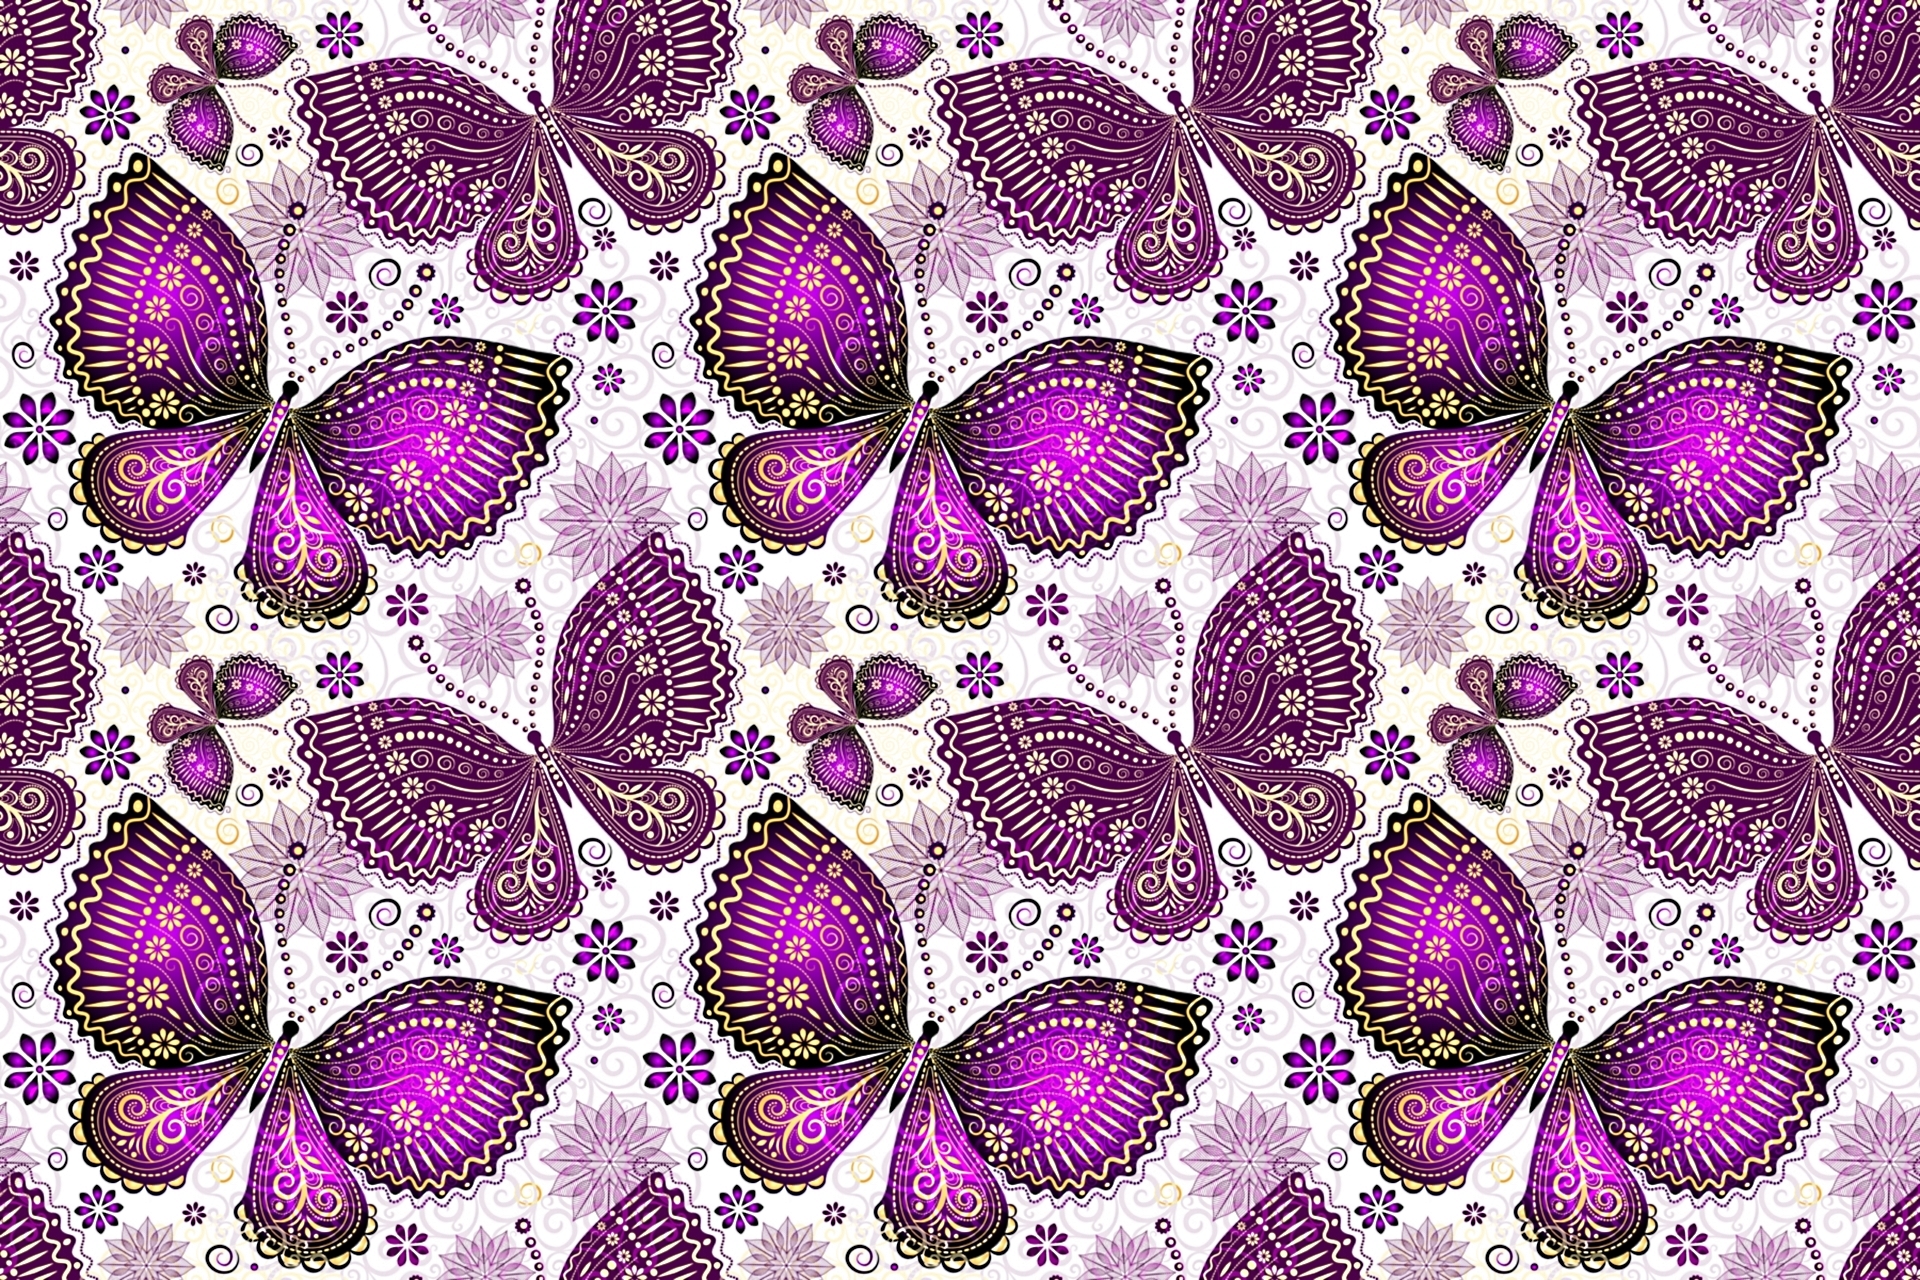 Скачать обои бесплатно Бабочка, Дизайн, Пурпурный, Художественные картинка на рабочий стол ПК